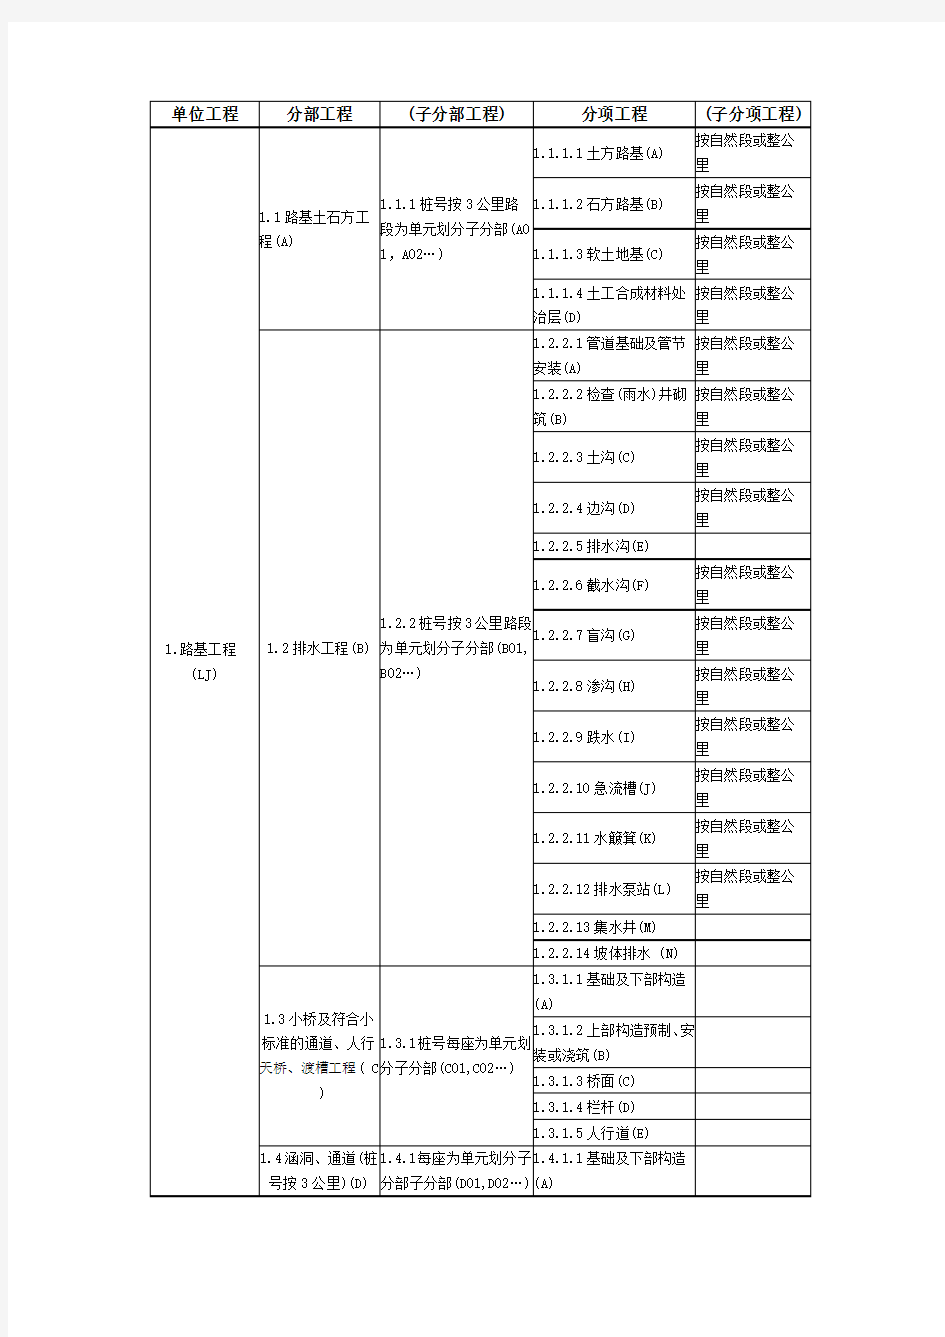 公路单位分部分项划分(最全)